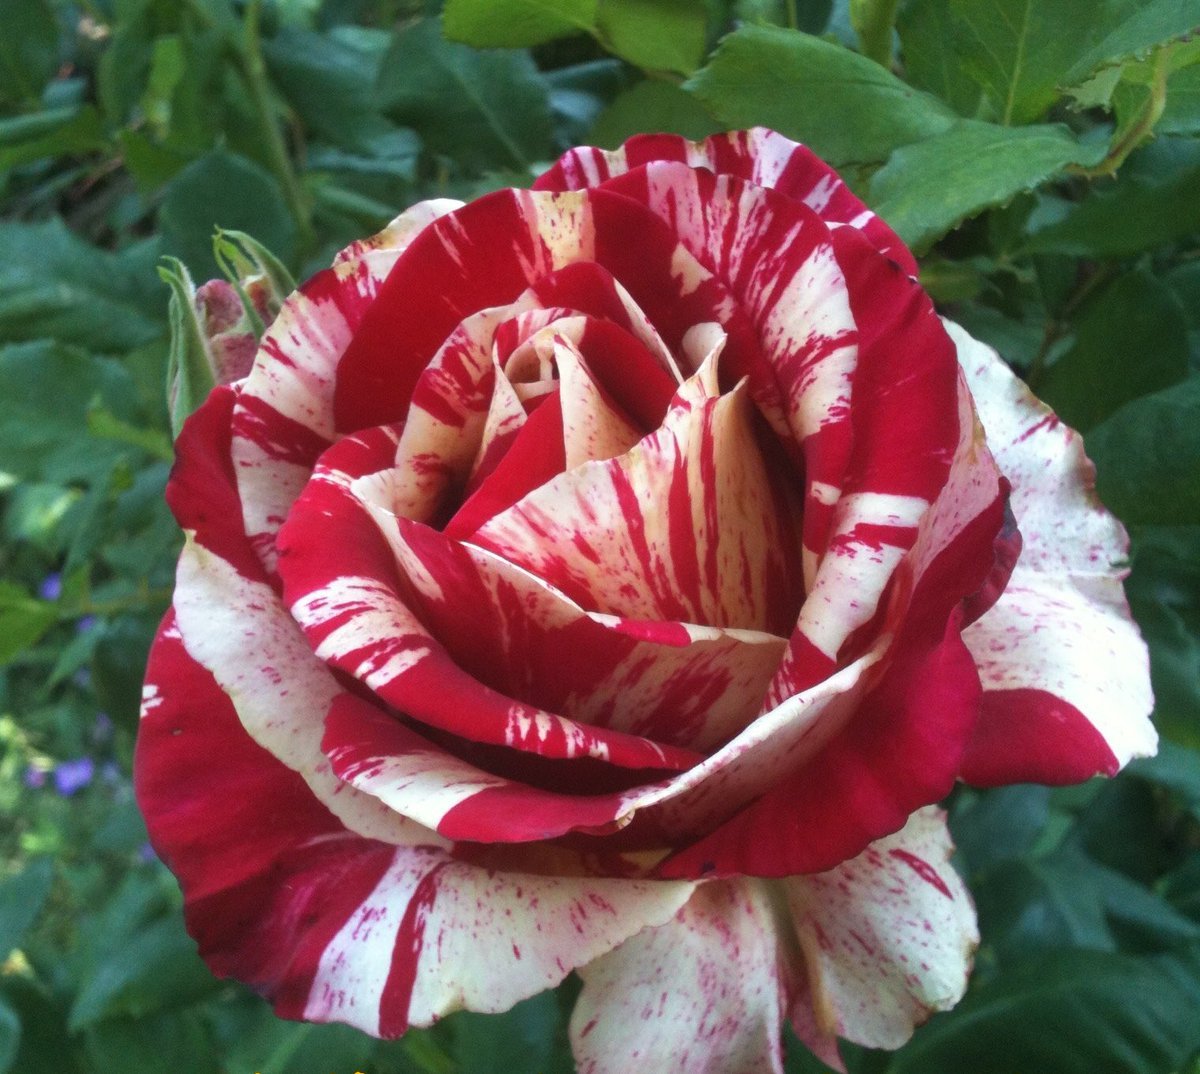 Определить сорт розы по фото онлайн бесплатно без регистрации и смс